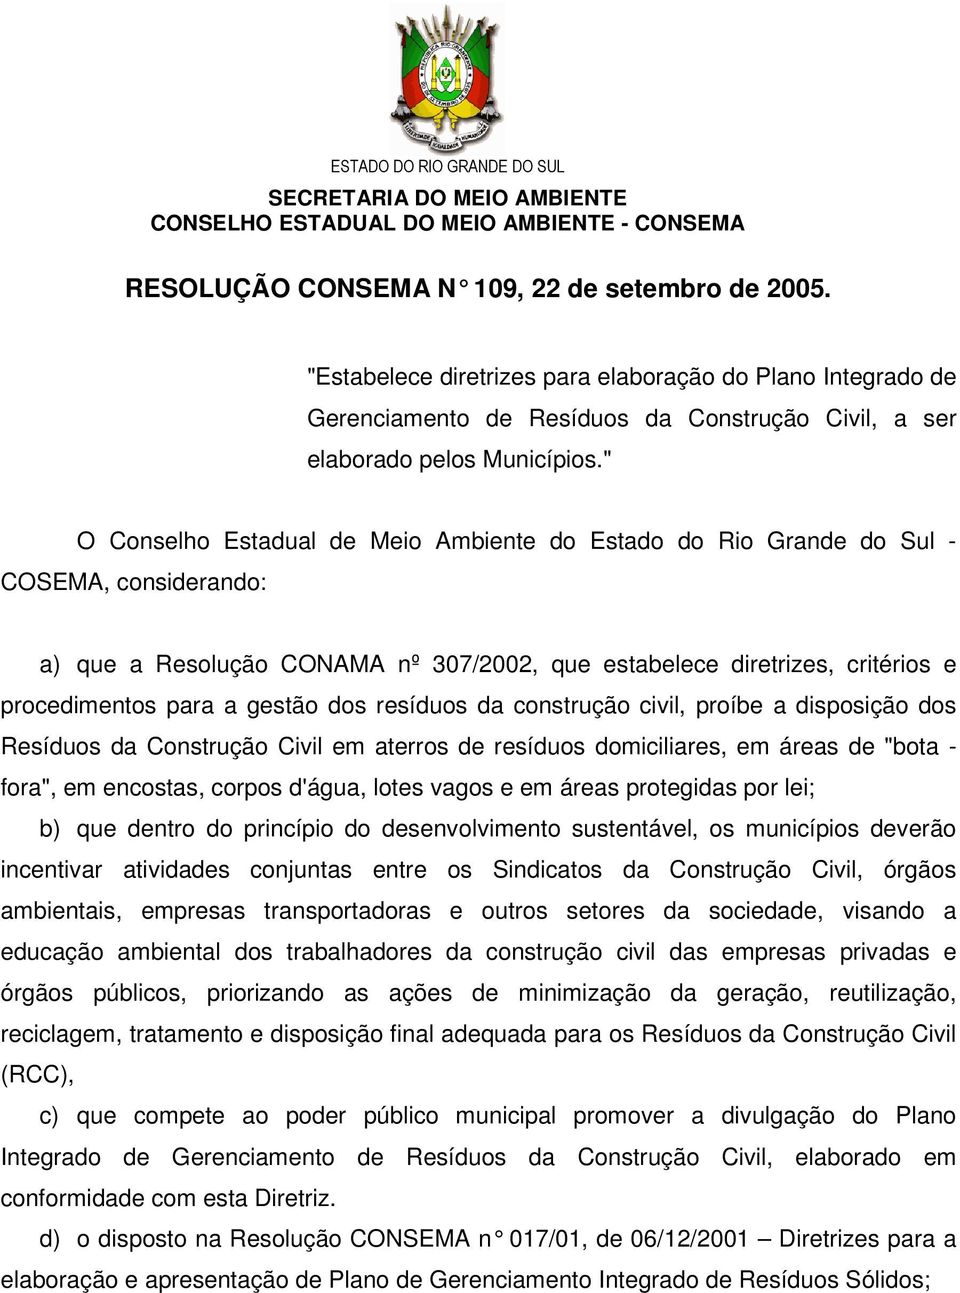 " O Conselho Estadual de Meio Ambiente do Estado do Rio Grande do Sul - COSEMA, considerando: a) que a Resolução CONAMA nº 307/2002, que estabelece diretrizes, critérios e procedimentos para a gestão